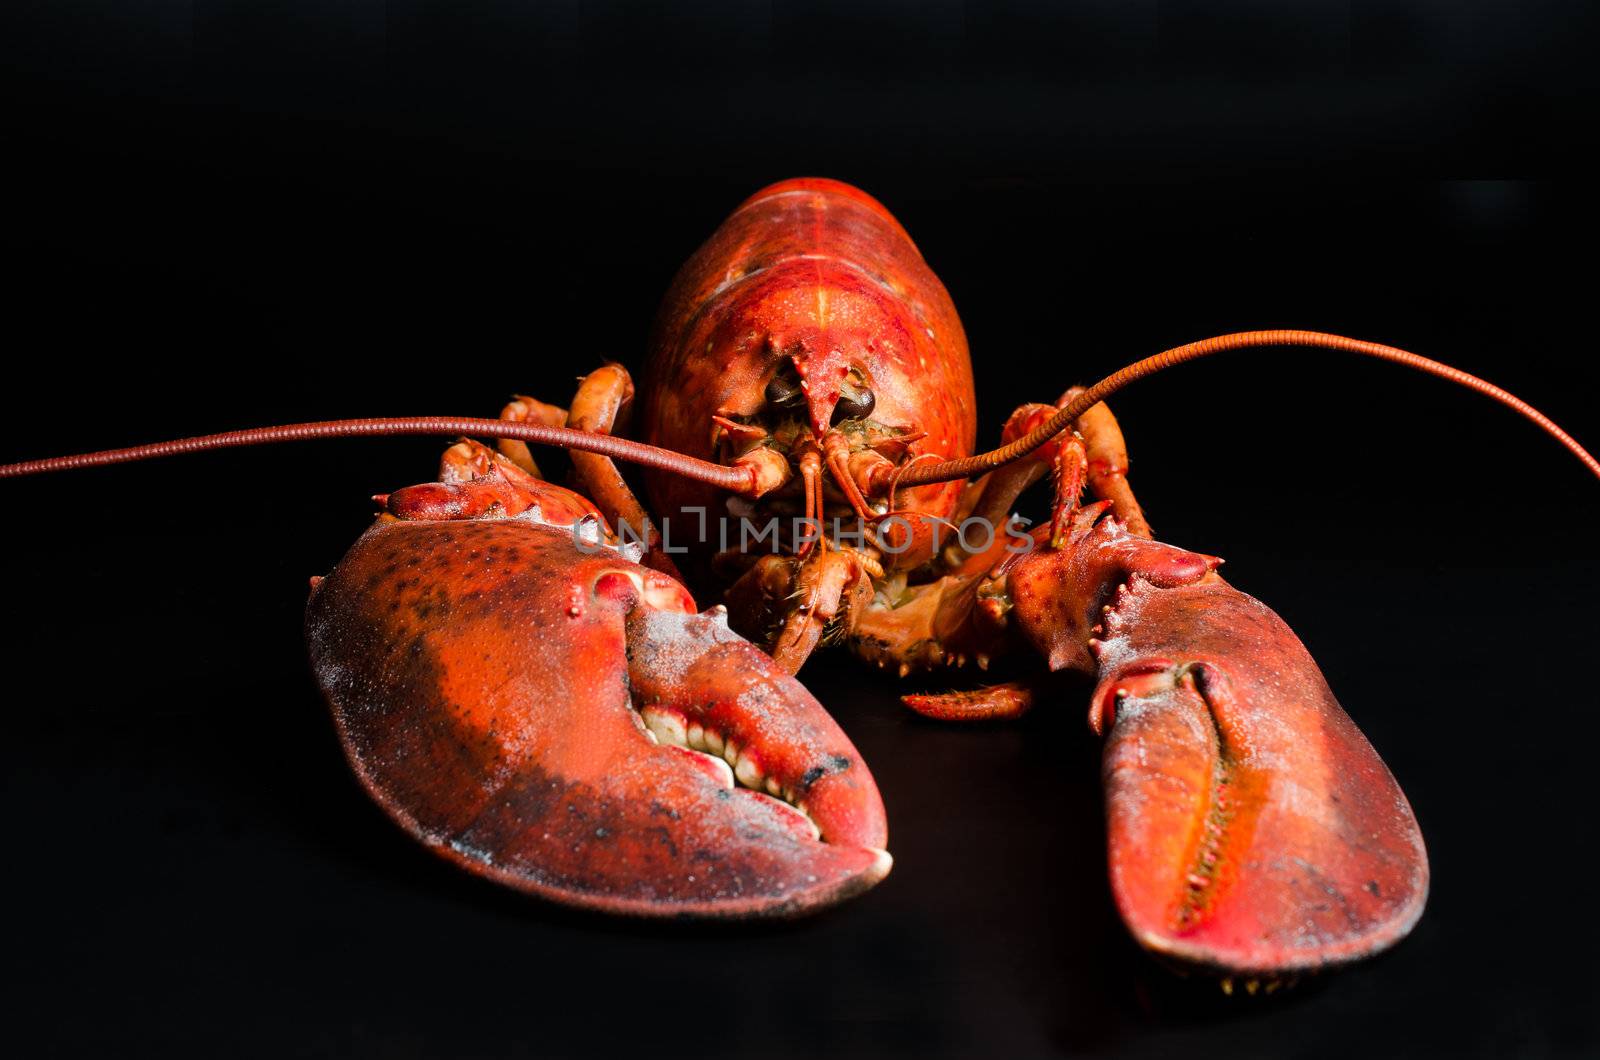 Lobster on black background